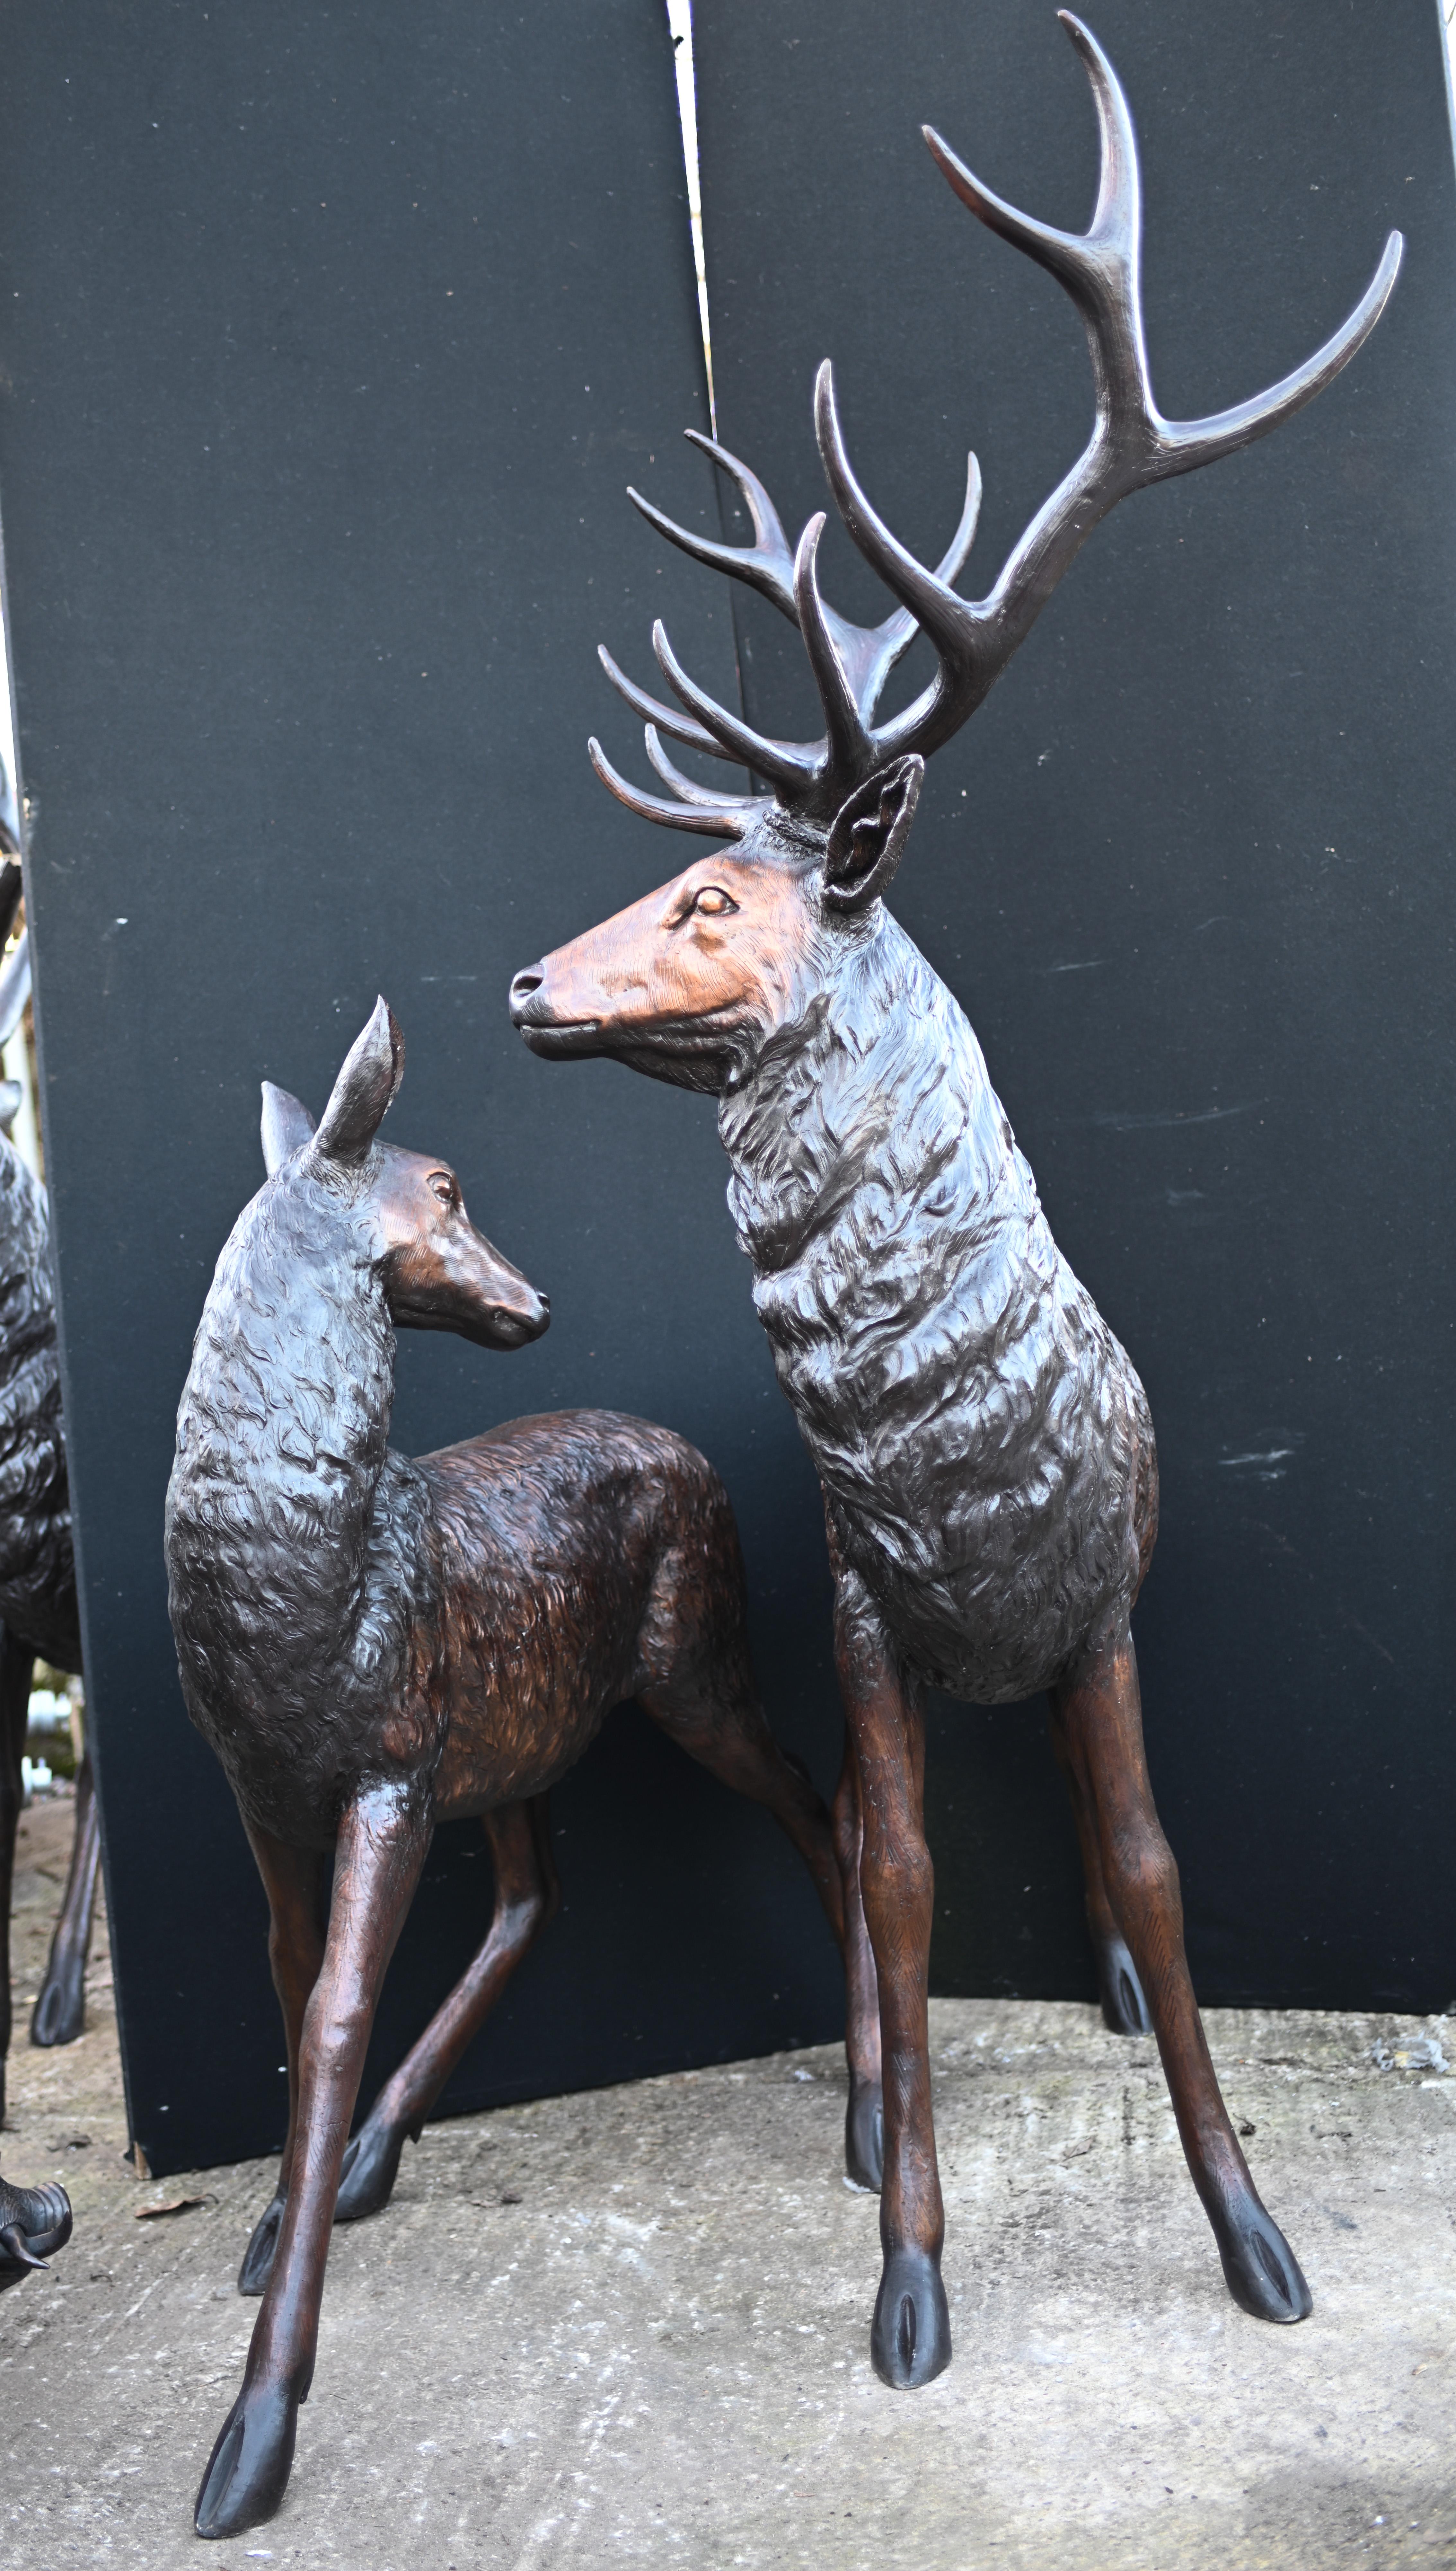 Magnifique duo en bronze d'un cerf et d'une biche
Ensemble de créatures écossaises des Highlands, grandeur nature.
Magnifique patine pour le bronze et le moulage est de superbe qualité.
Un travail remarquable, une œuvre d'art classique, parfaite